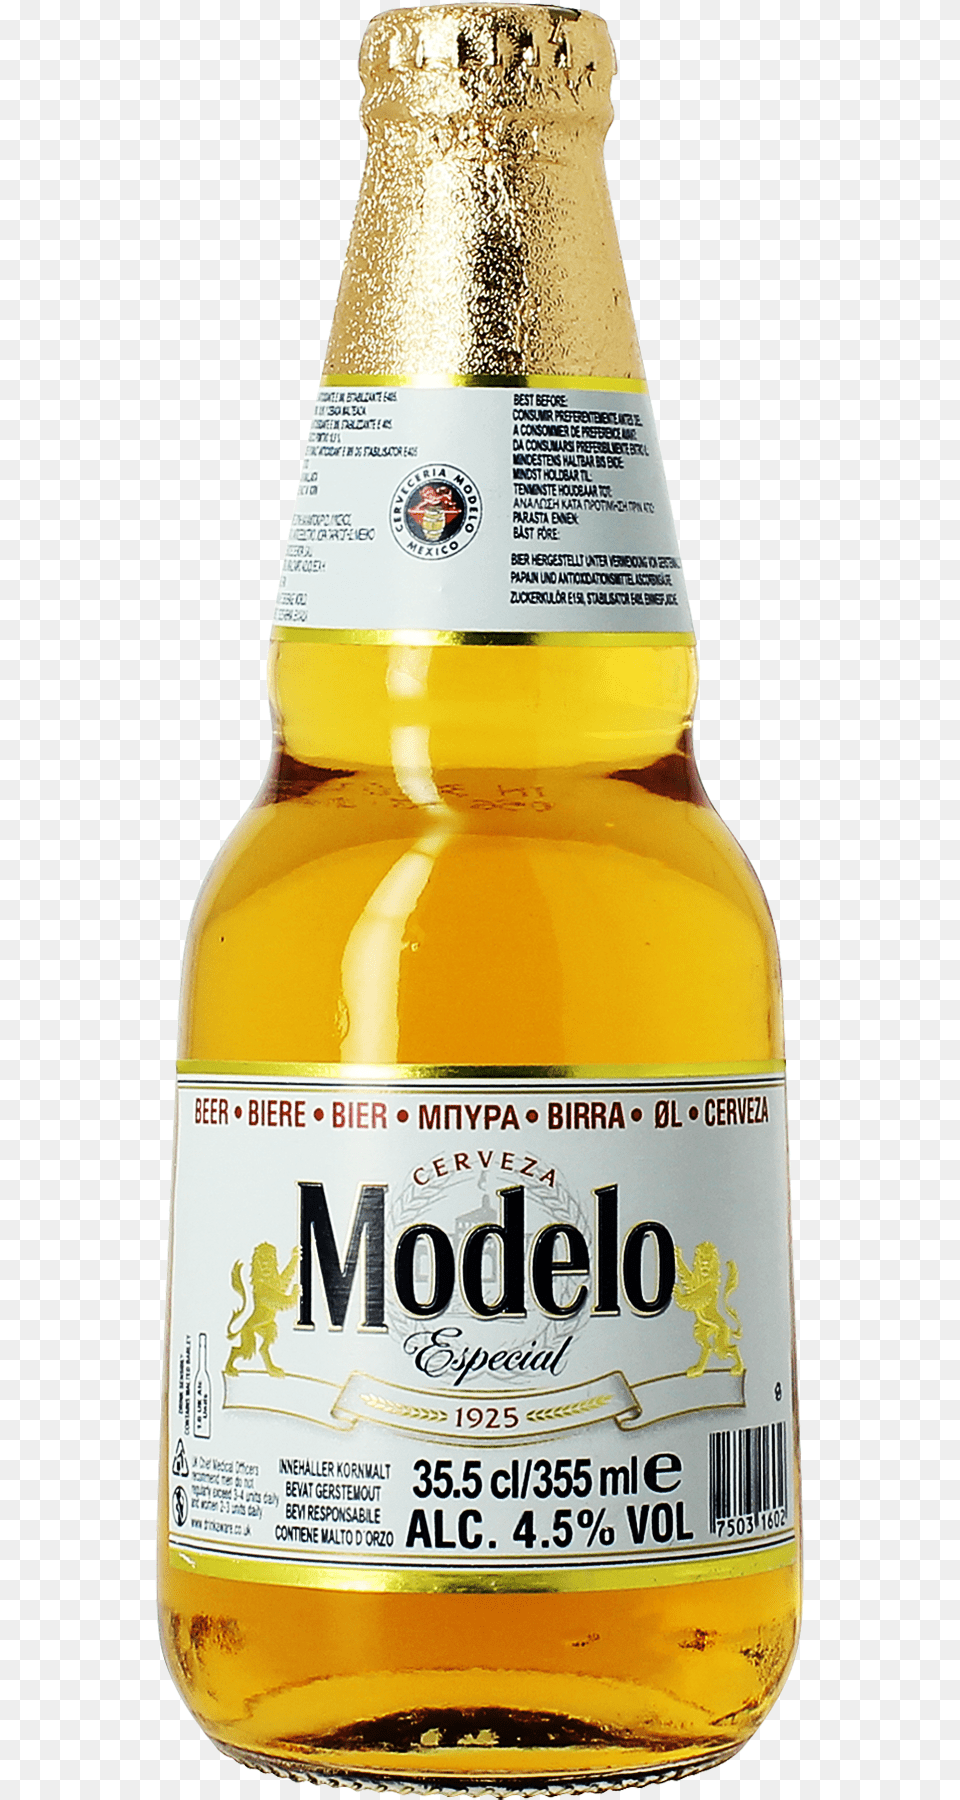 Modelo Beer, Alcohol, Beer Bottle, Beverage, Bottle Free Png